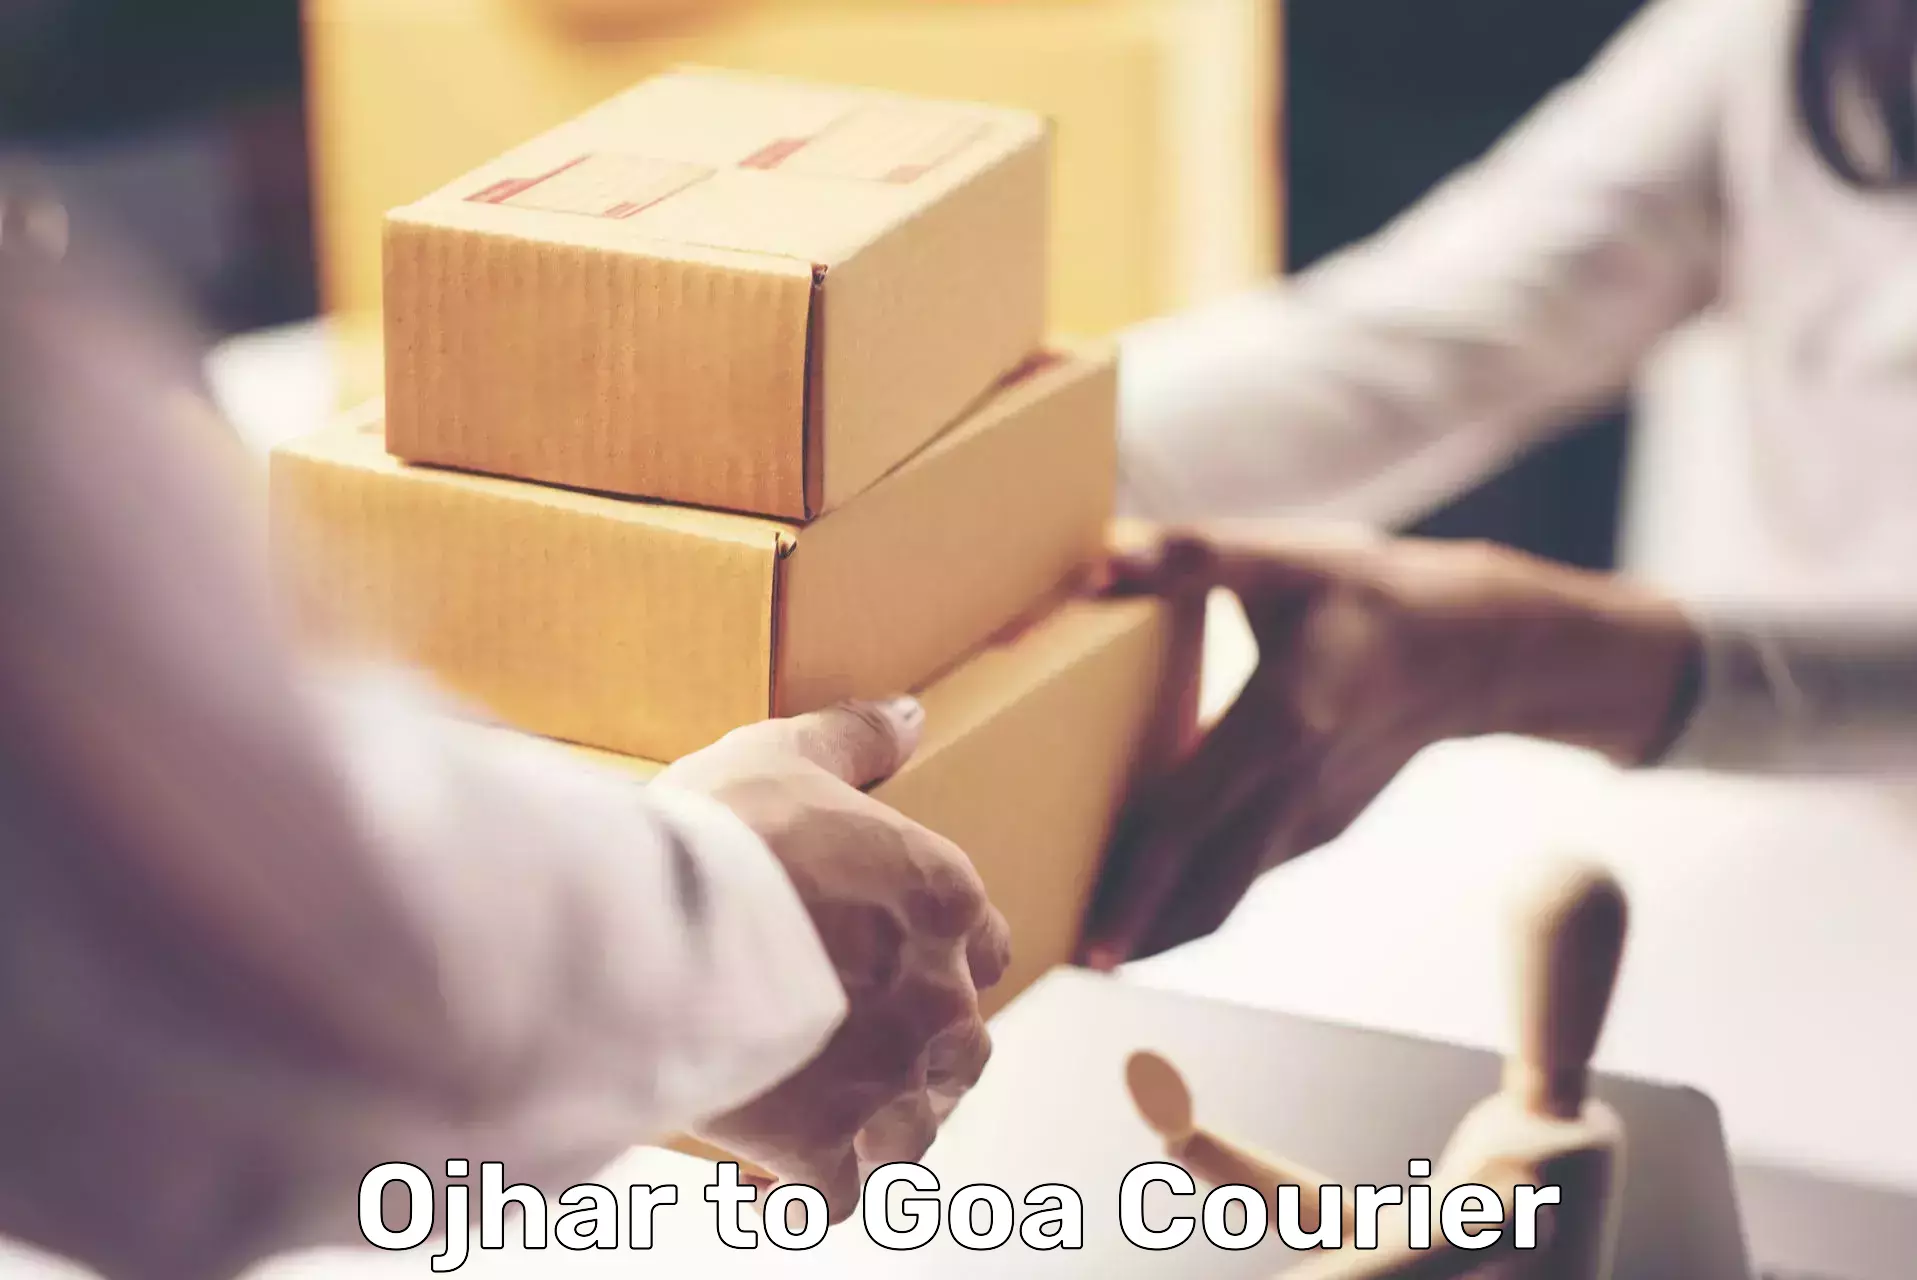 Courier service comparison Ojhar to NIT Goa